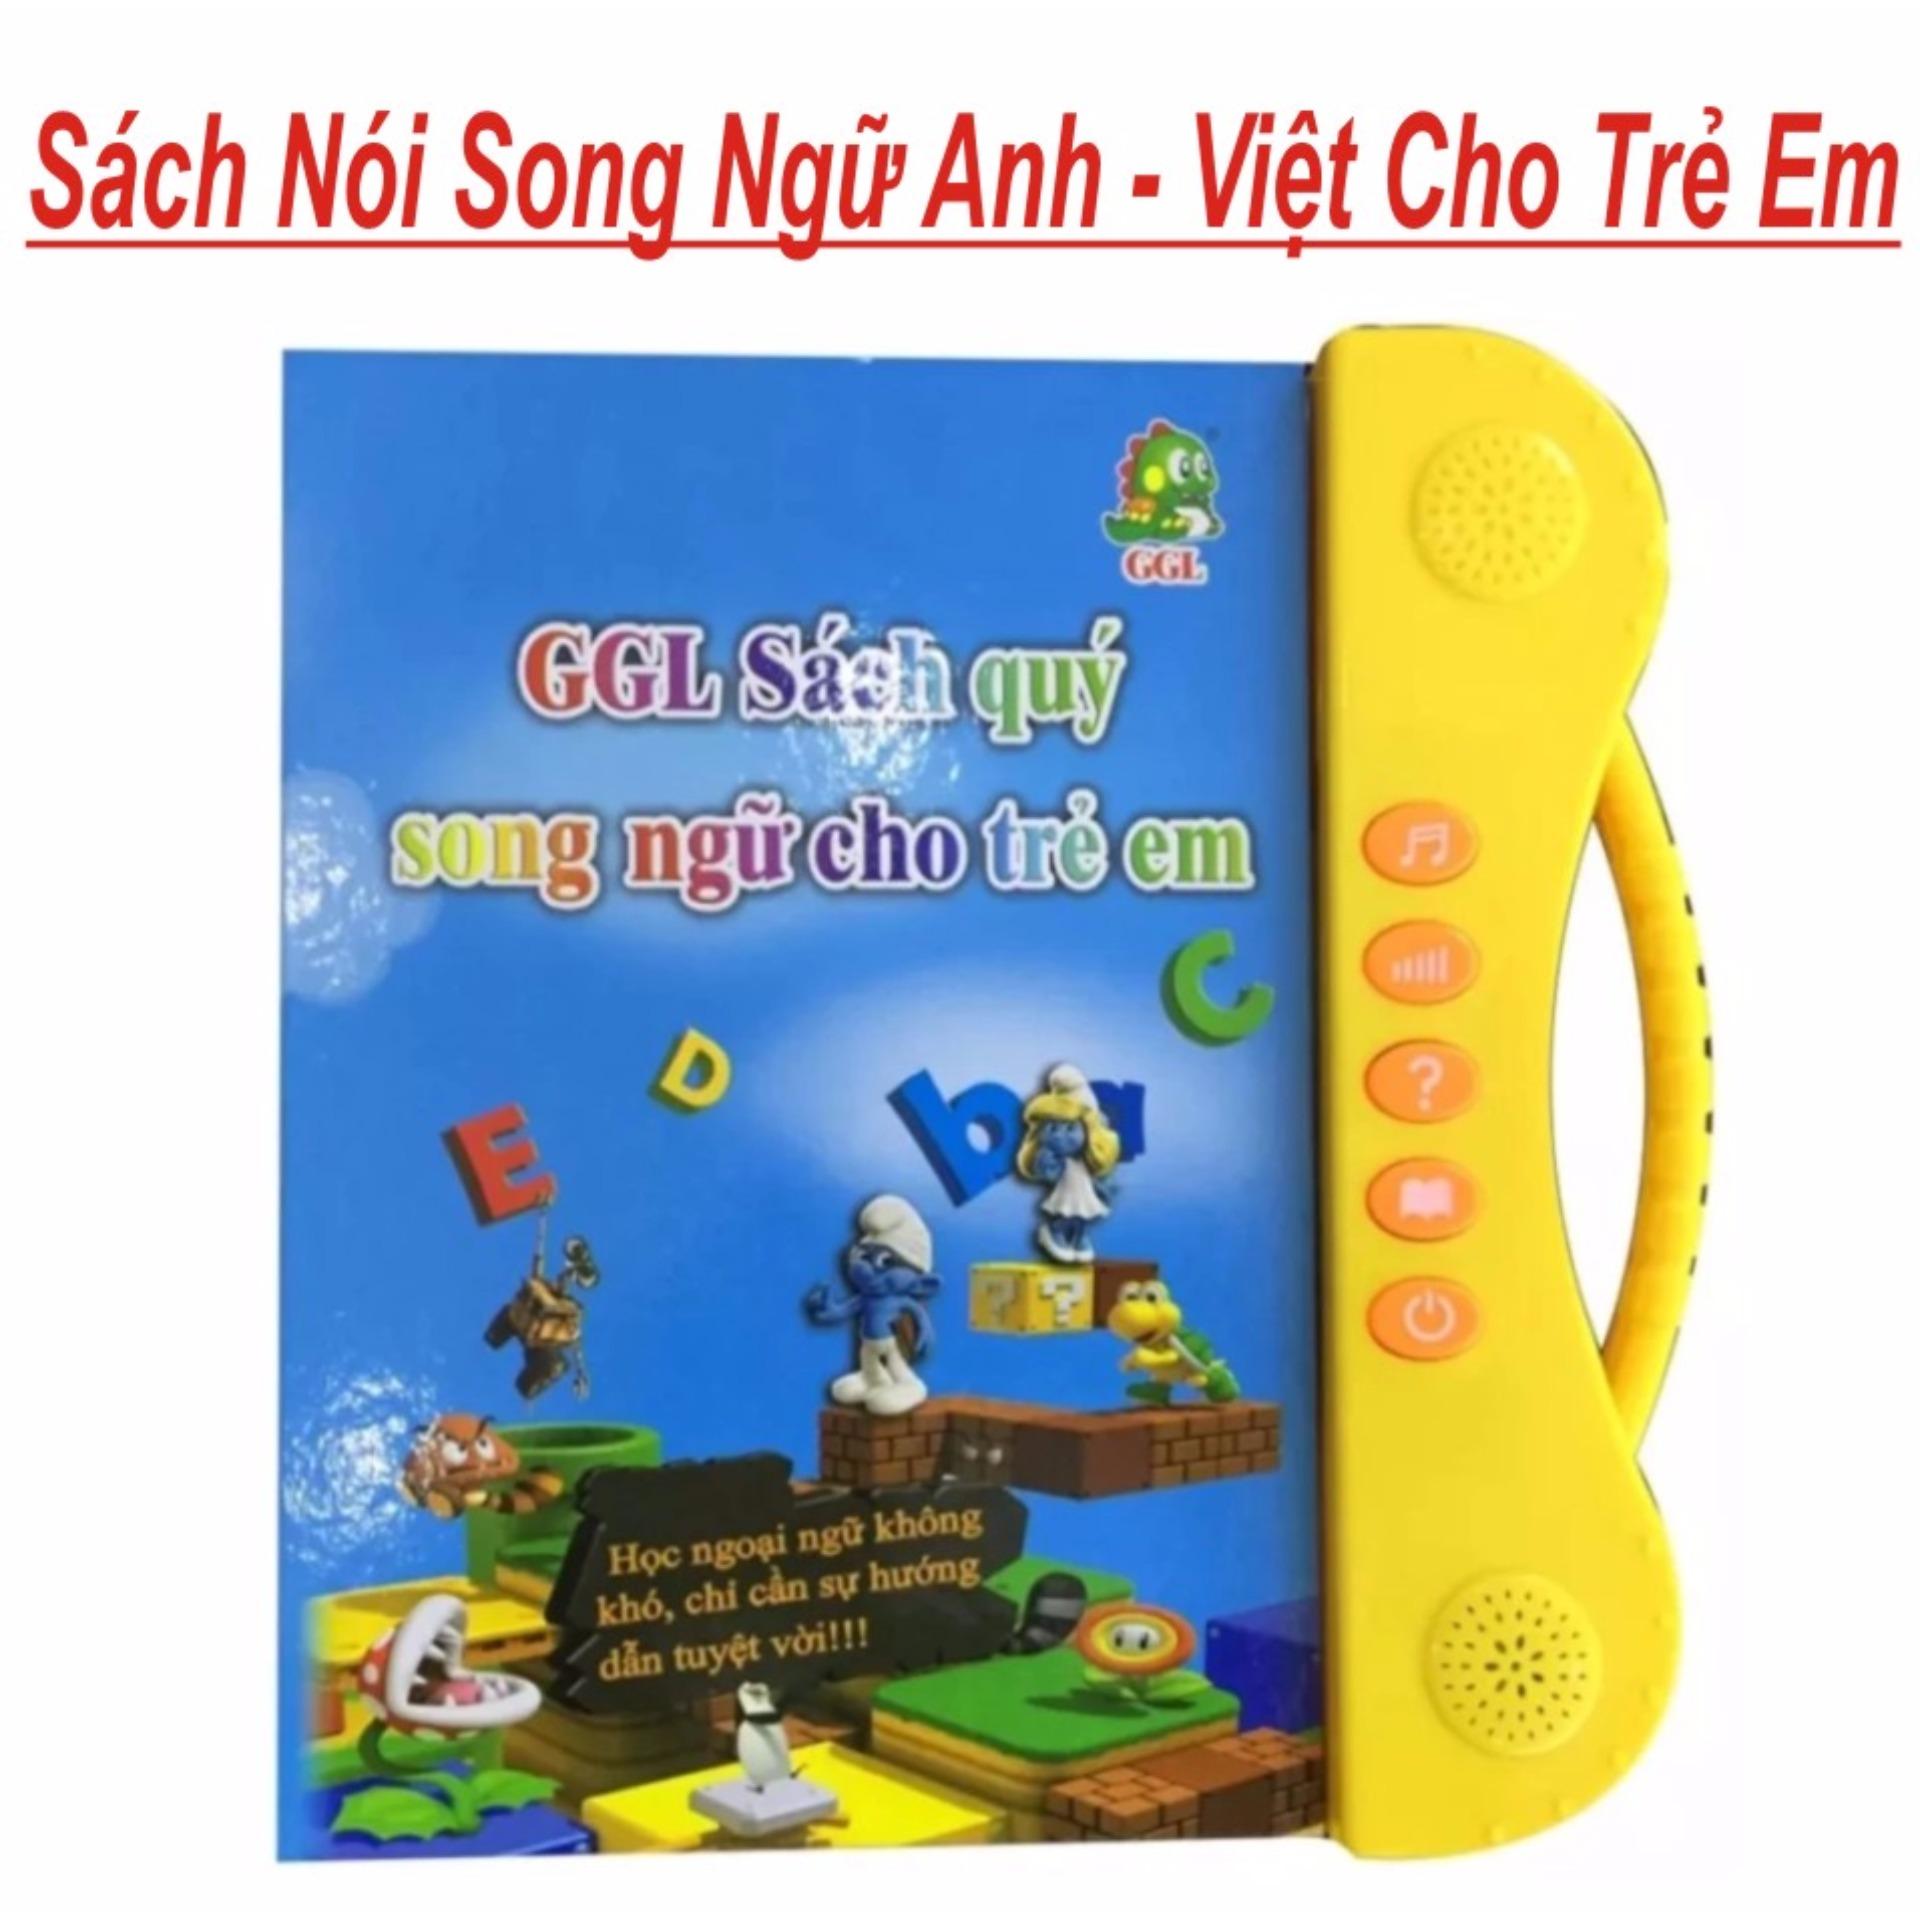 Sách Nói Điện Tử Song Ngữ Anh - Việt Giúp Trẻ Học Tốt Tiếng Anh